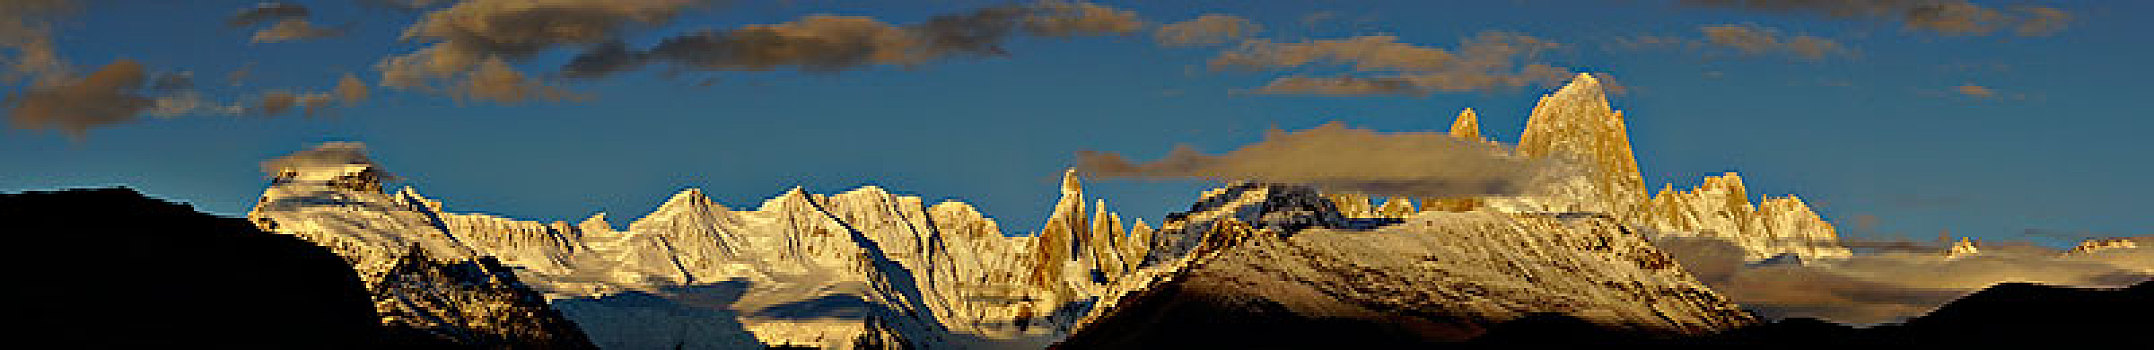 积雪,山脉,日出,洛斯格拉希亚雷斯国家公园,省,巴塔哥尼亚,阿根廷,南美